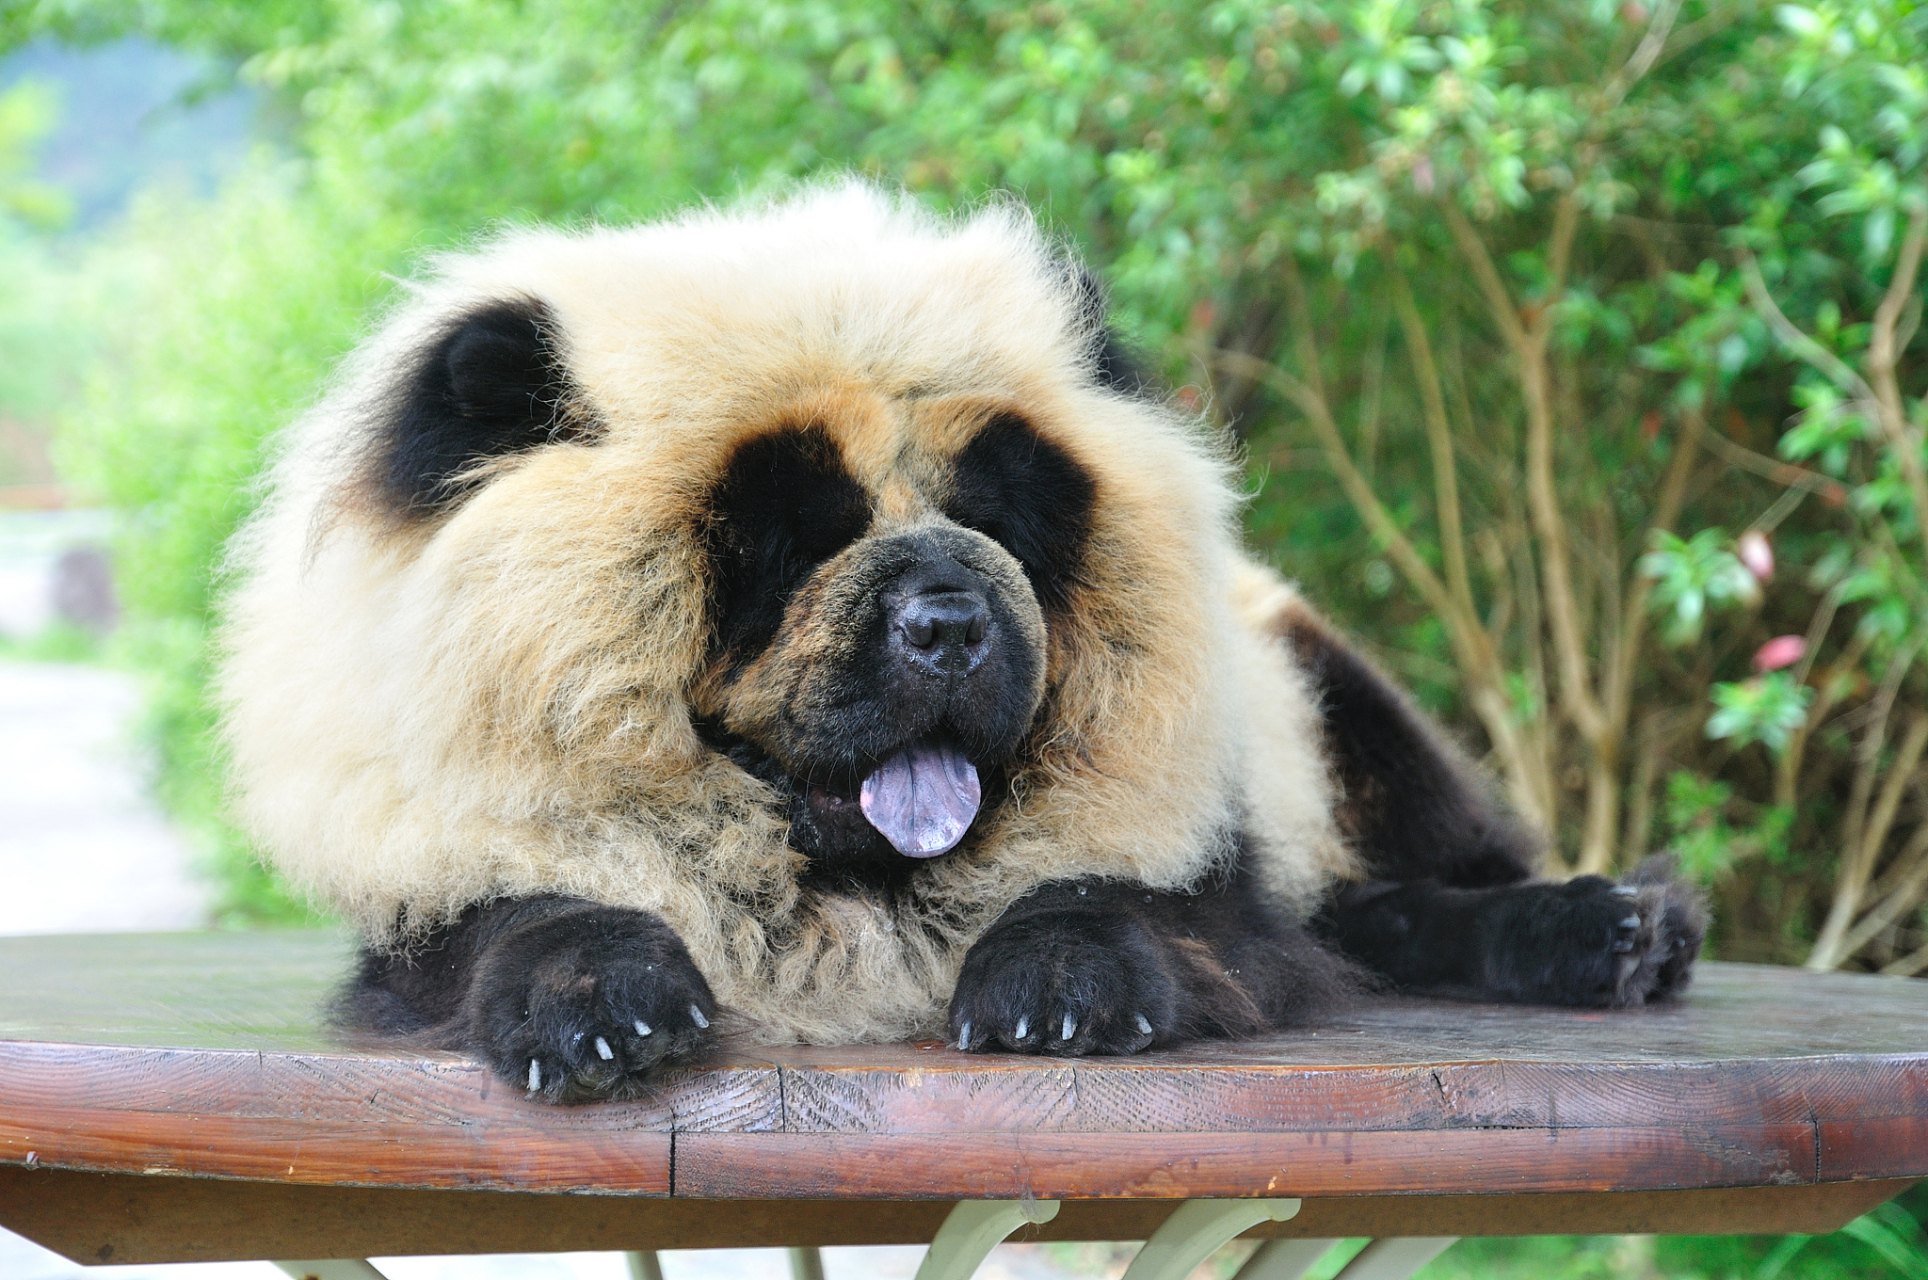 熊猫犬与动物园经济发展  9498近日,江苏泰州动物园的熊猫犬火爆